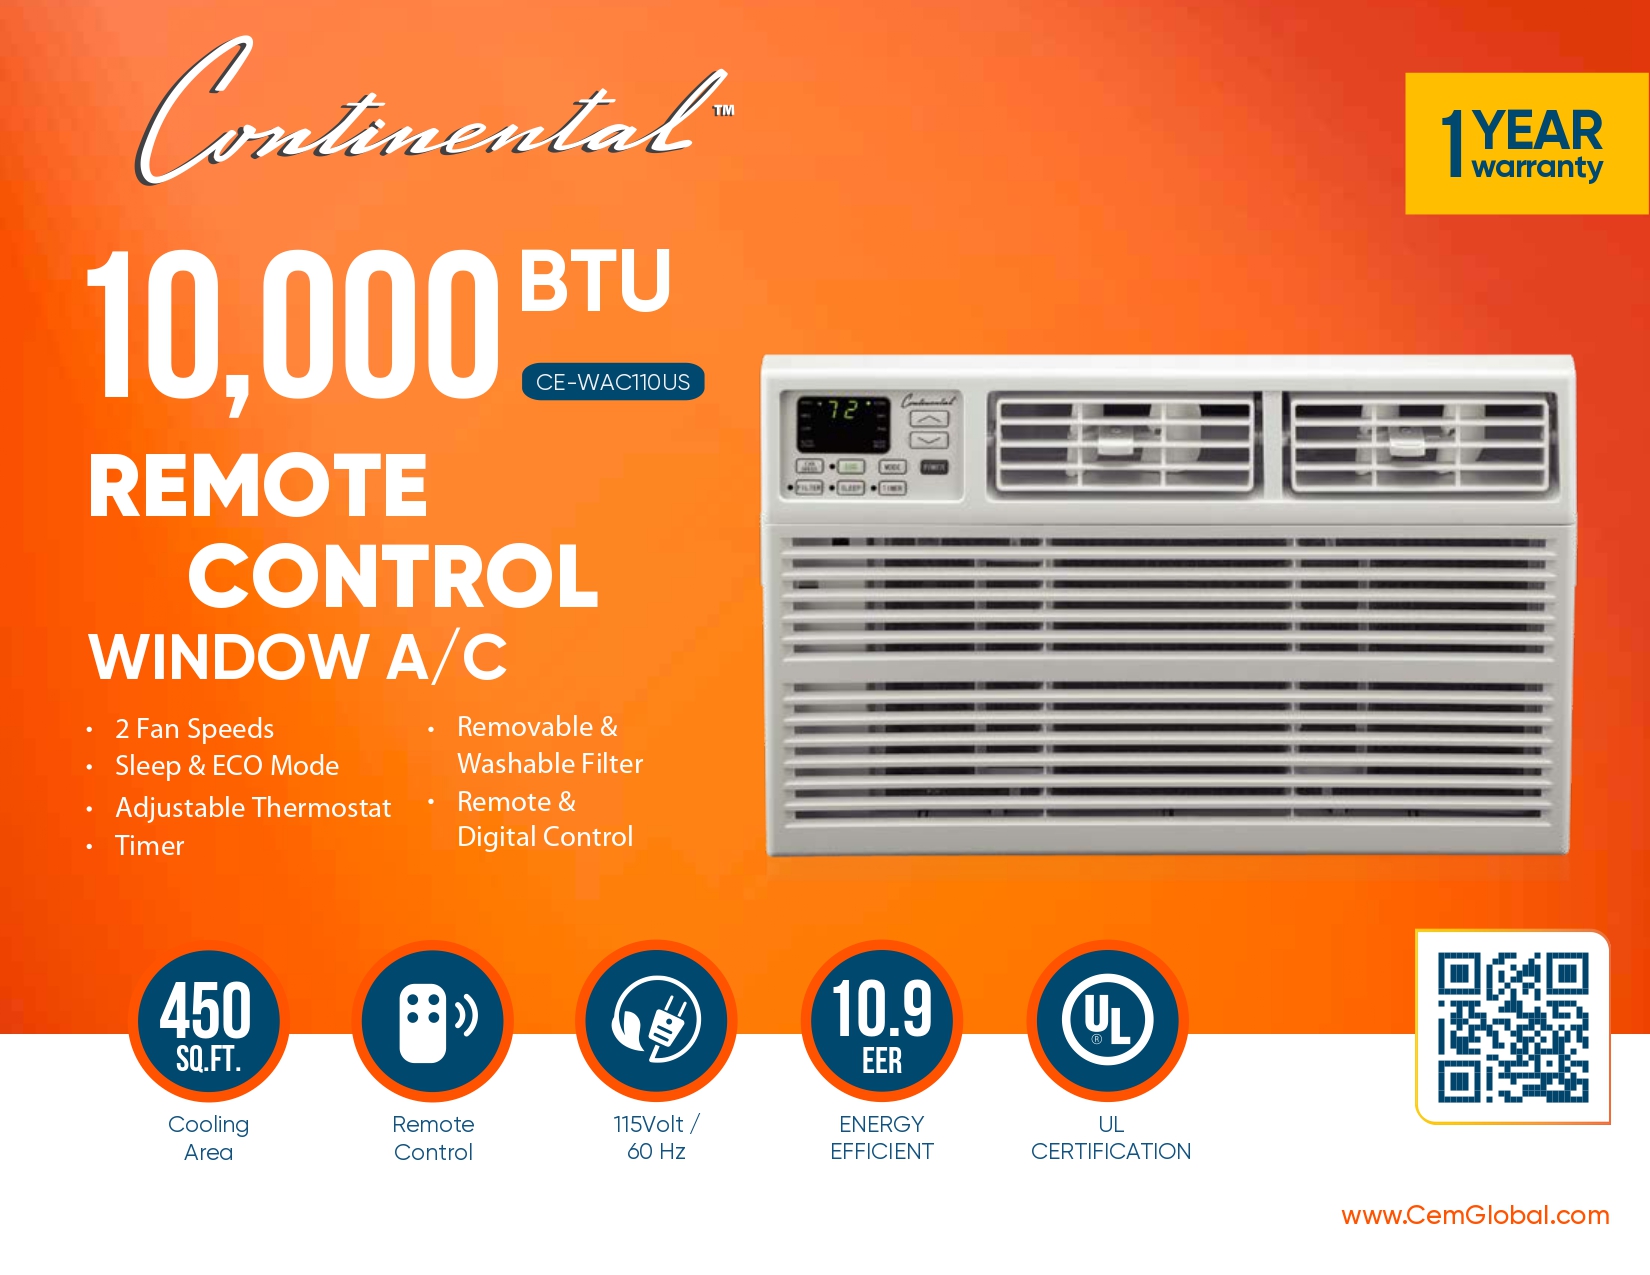 10,000 BTU REMOTE CONTROL WINDOW A/C